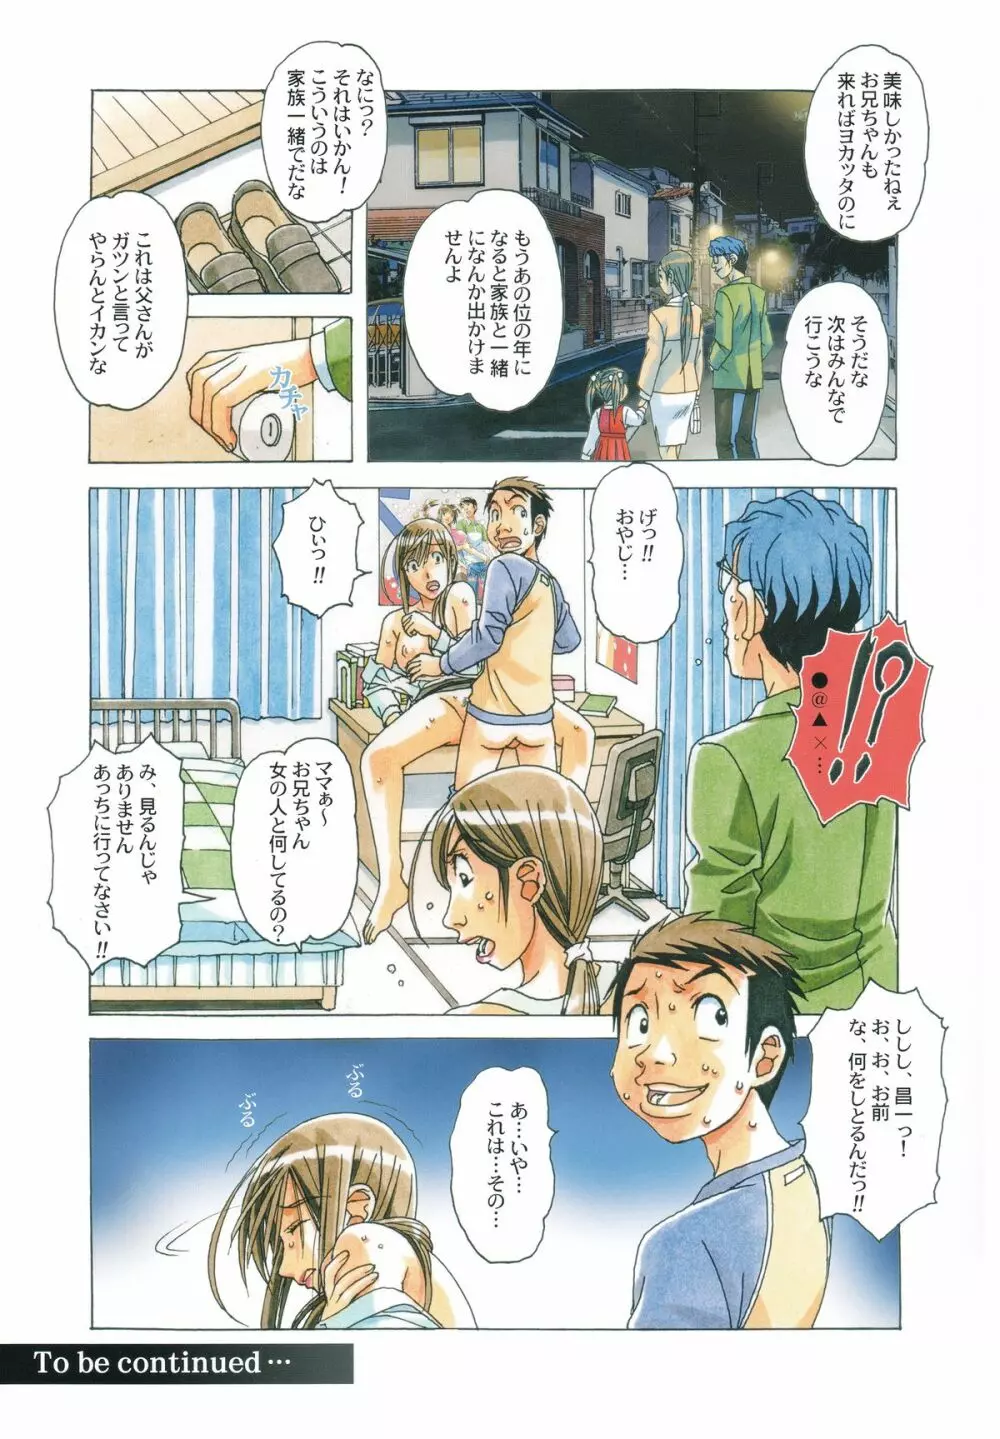 侵蝕 EROSION Episode07 Page.24